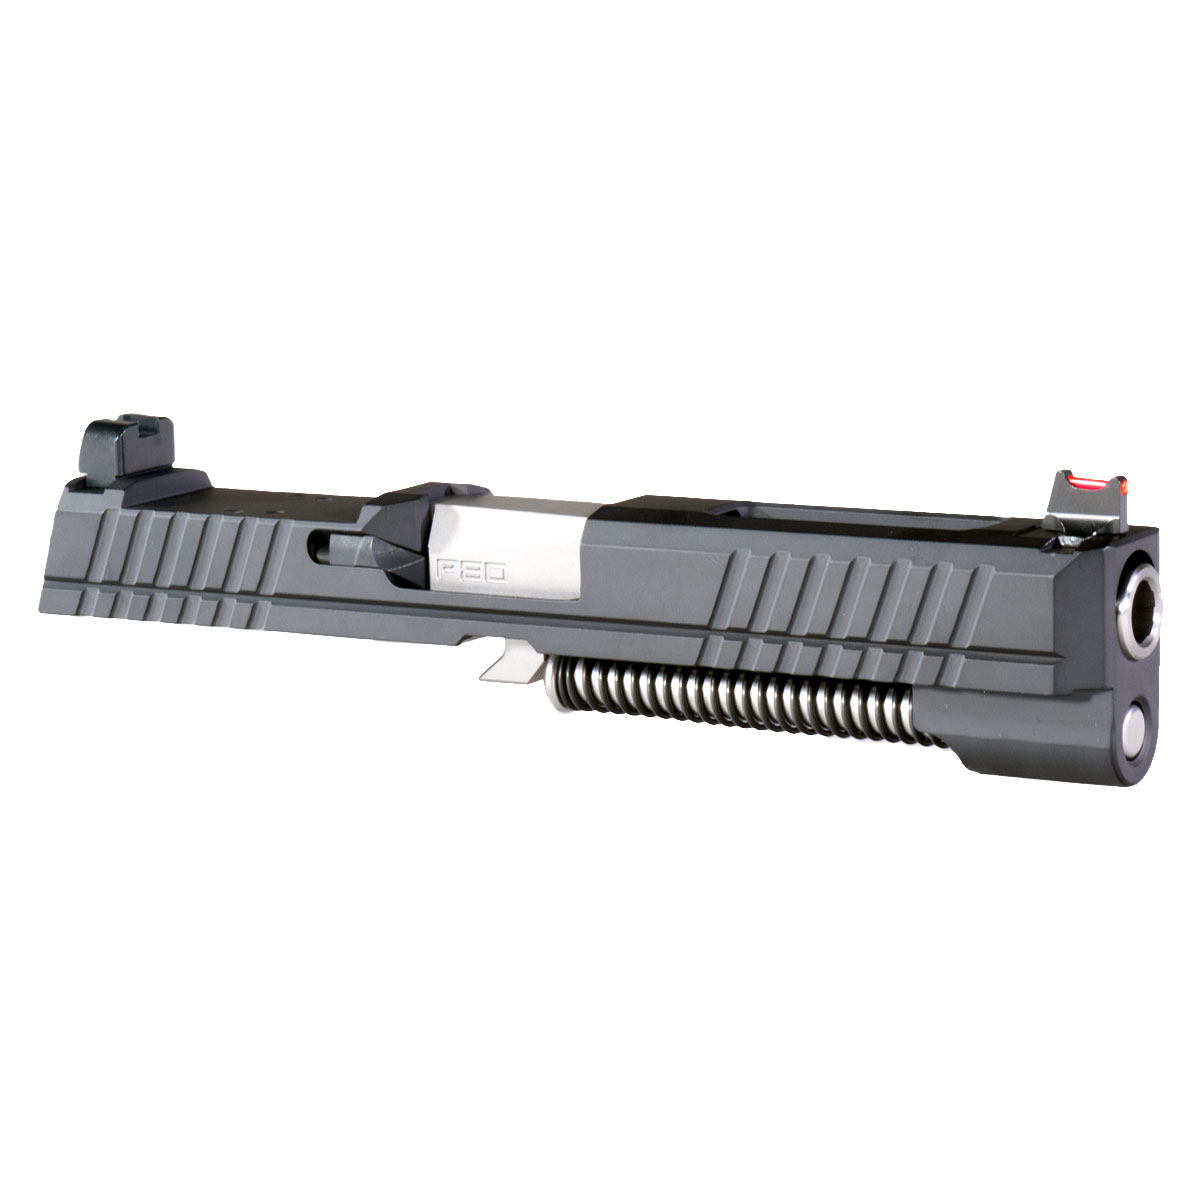 DD 'Thalrix' 9mm Complete Slide Kit - Sig P320 Full-Size  Compatible